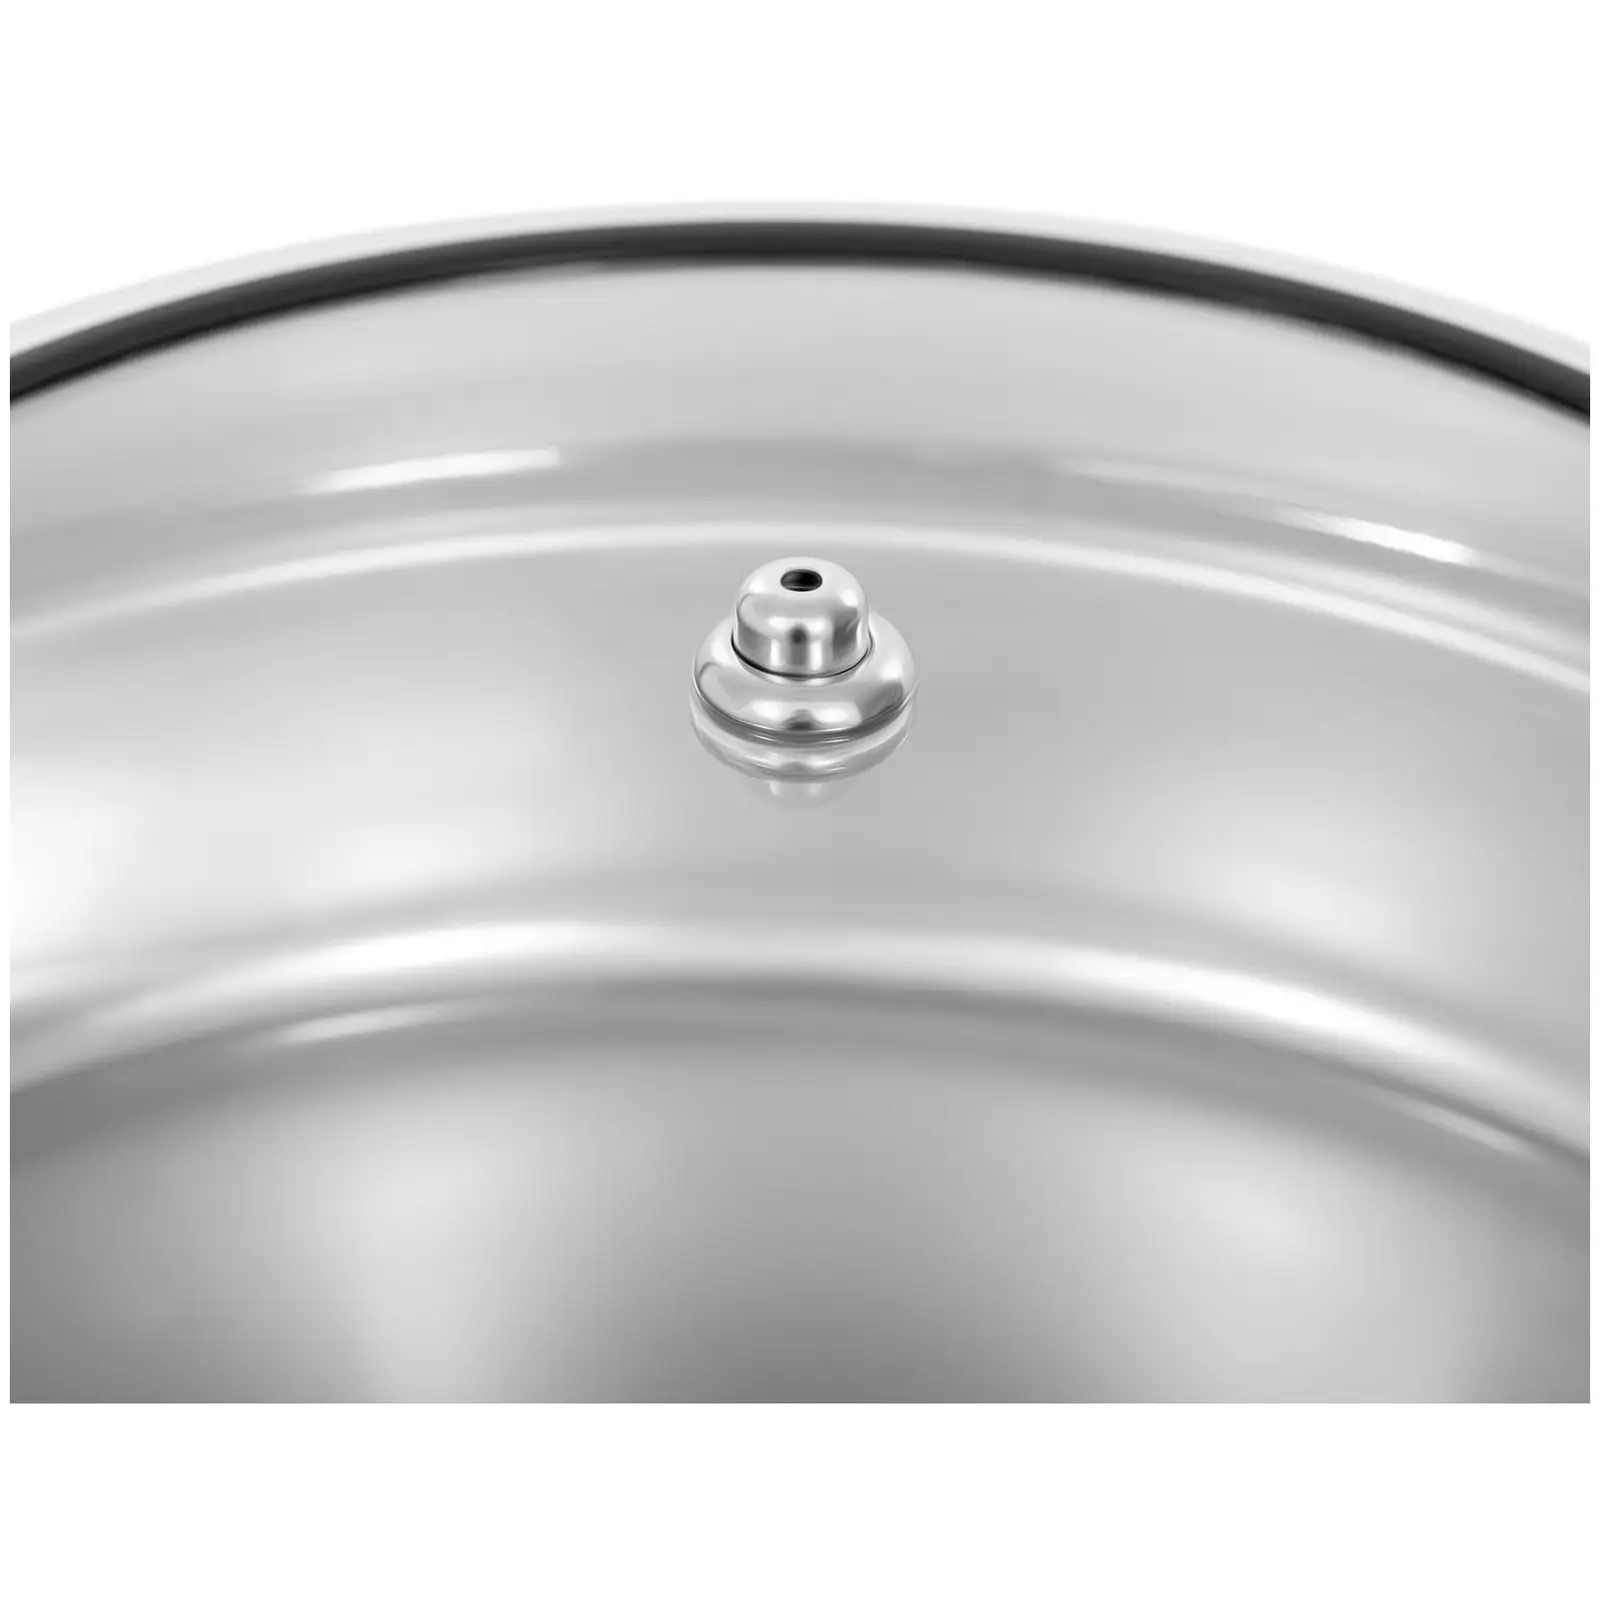 B-zboží Chafing dish - kulatá nádoba s okénkem - Royal Catering - 5,5 l